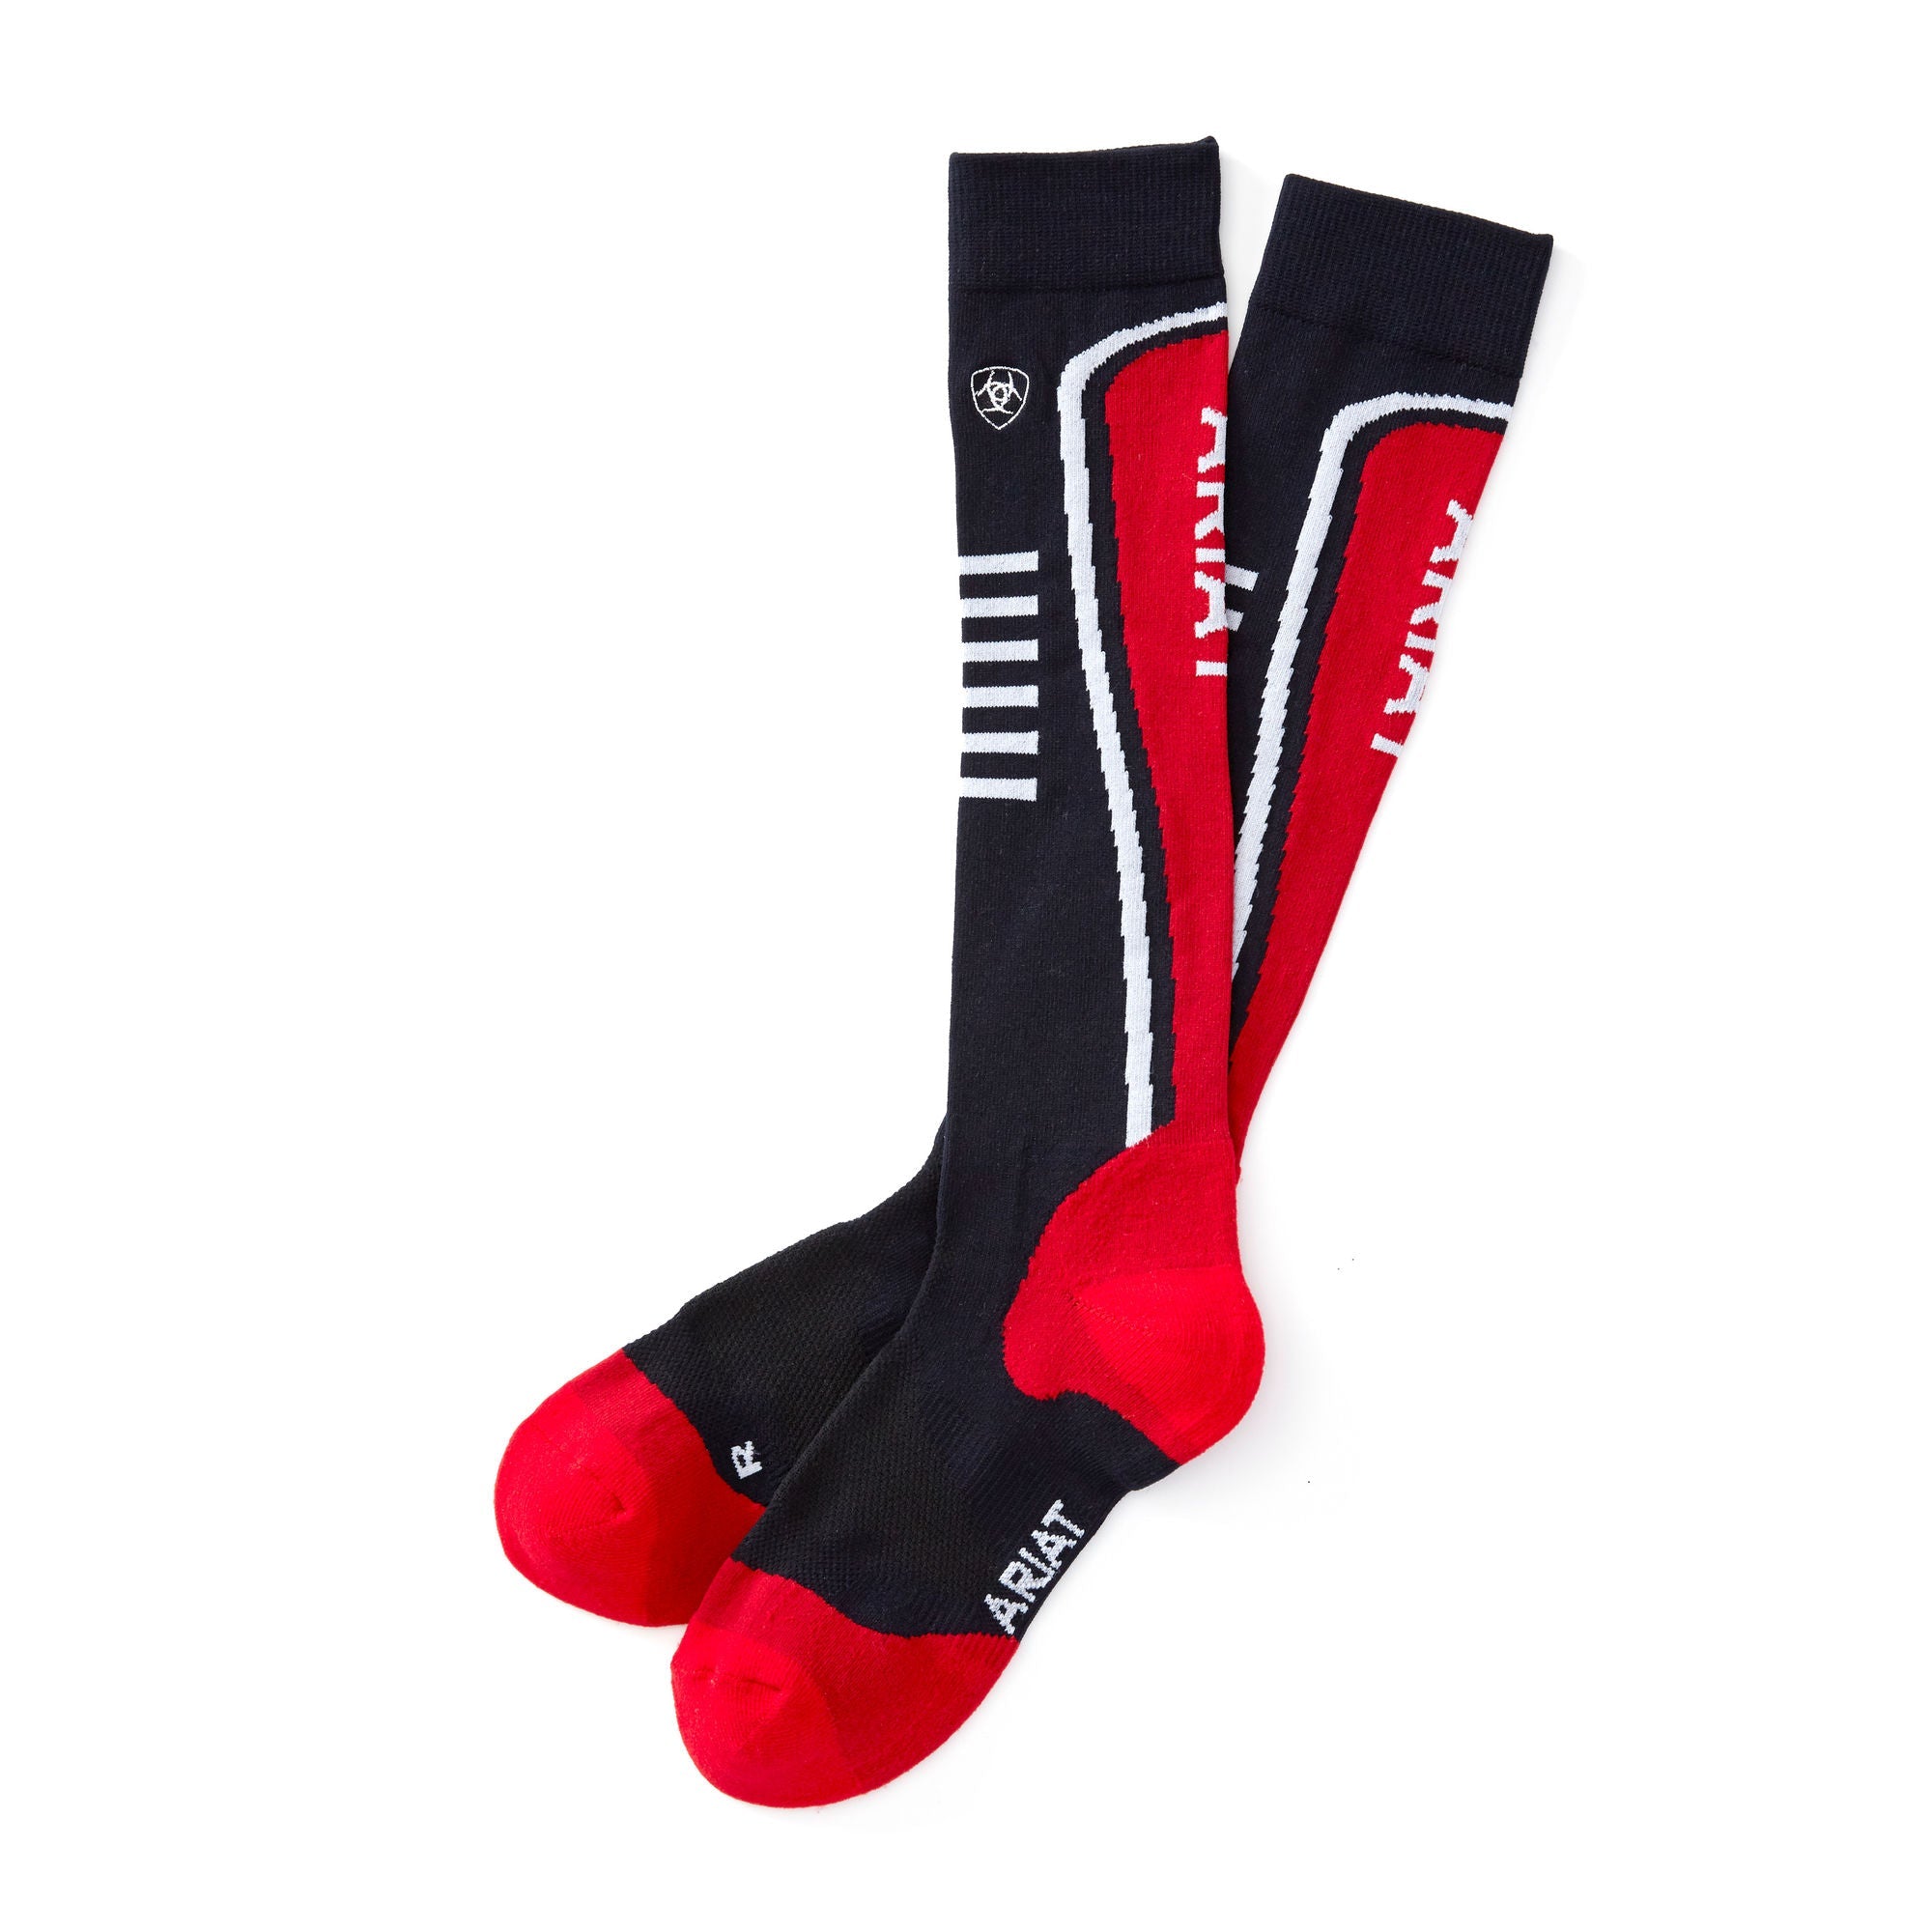 Socken WMS AriatTEK Slimline Performance Socks red/navy | 10026144